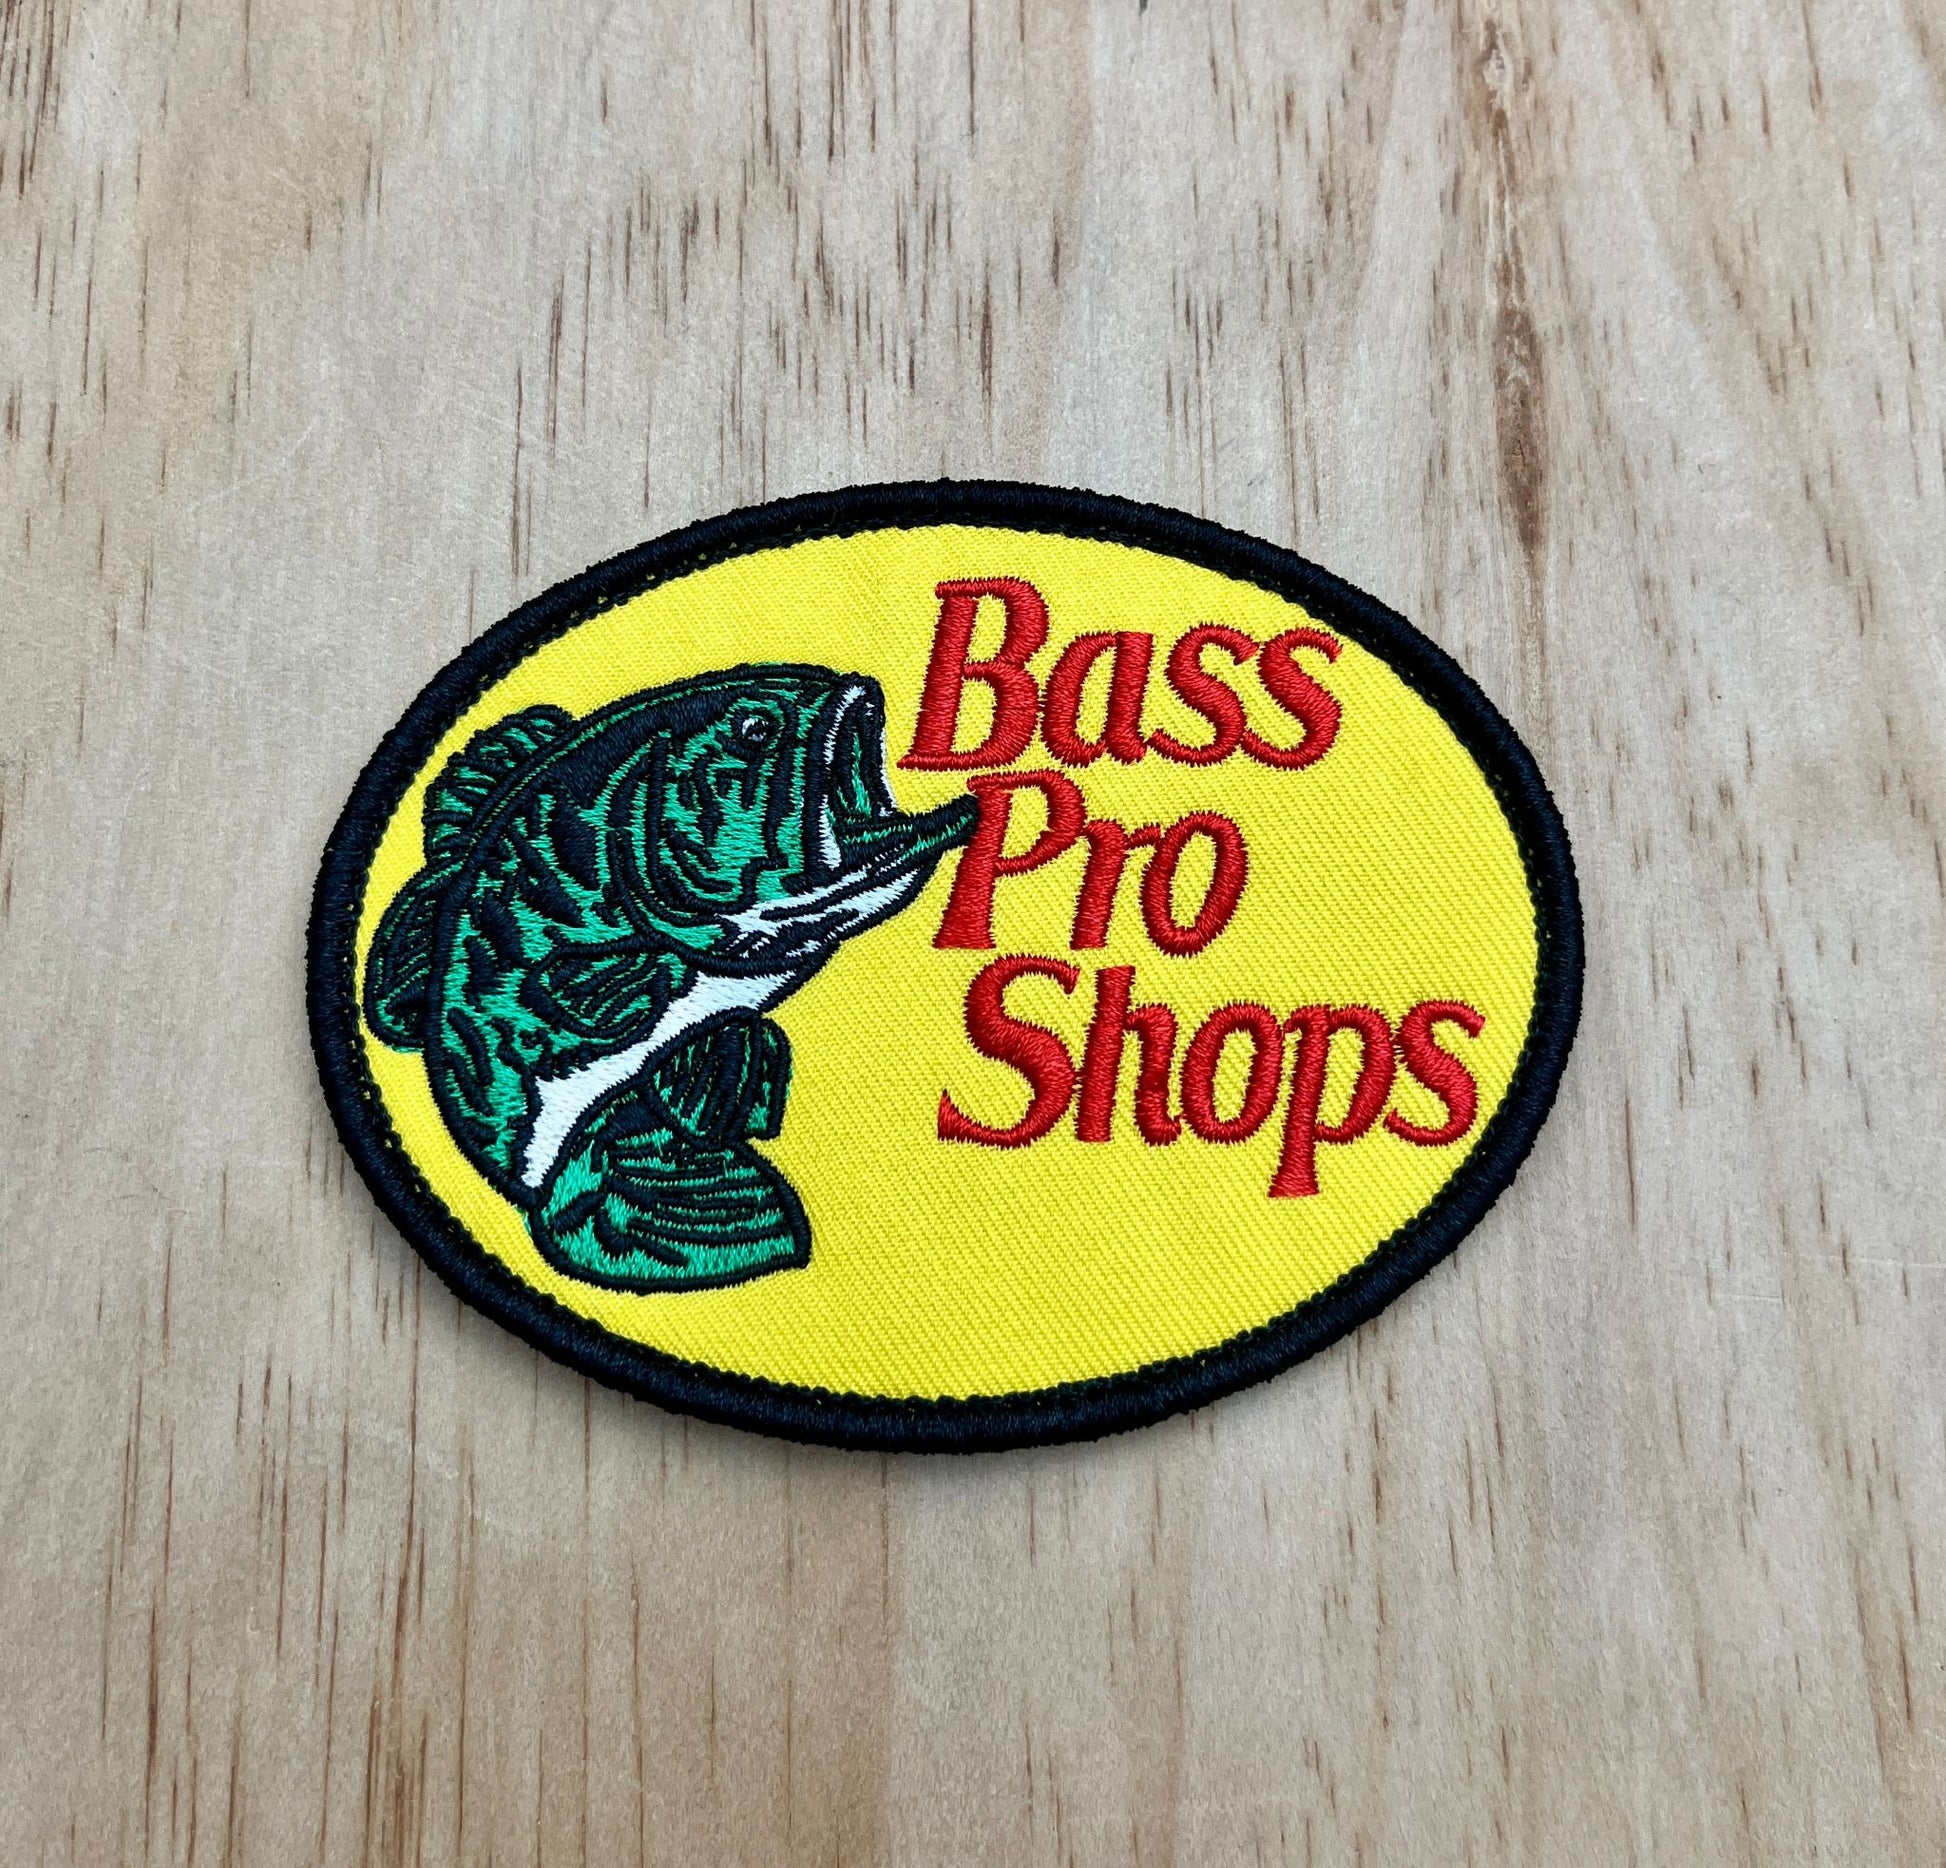 Bass Pro Shops patch